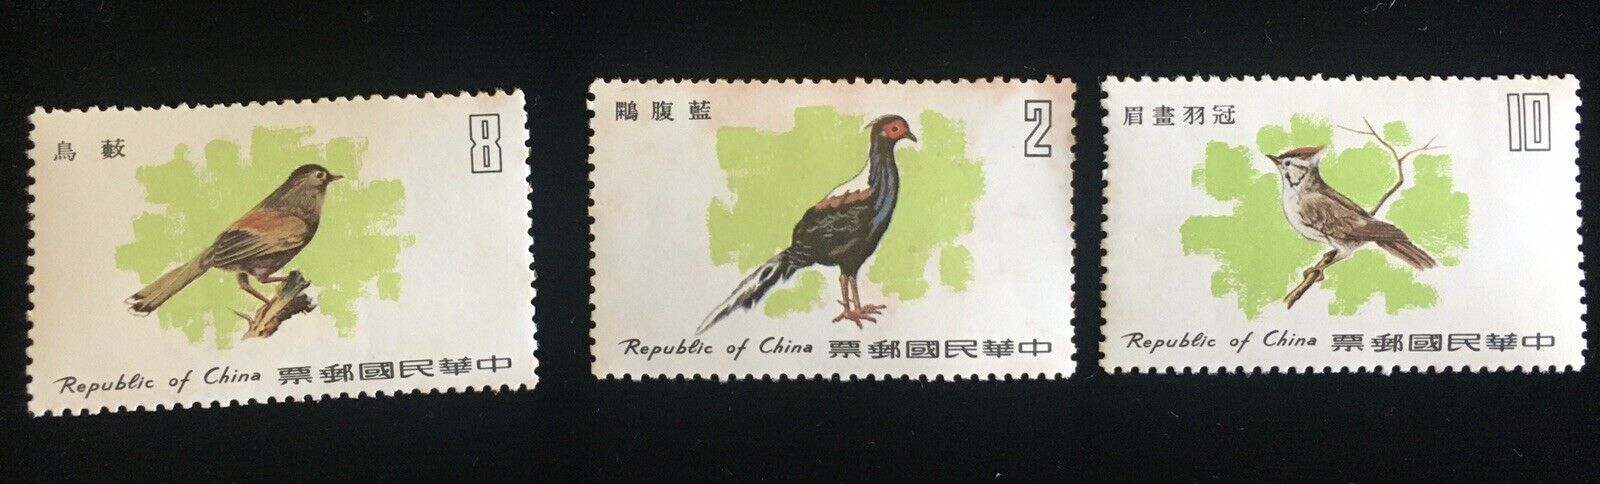 China Taiwan 1977 Birds #2  MNH - $3.50